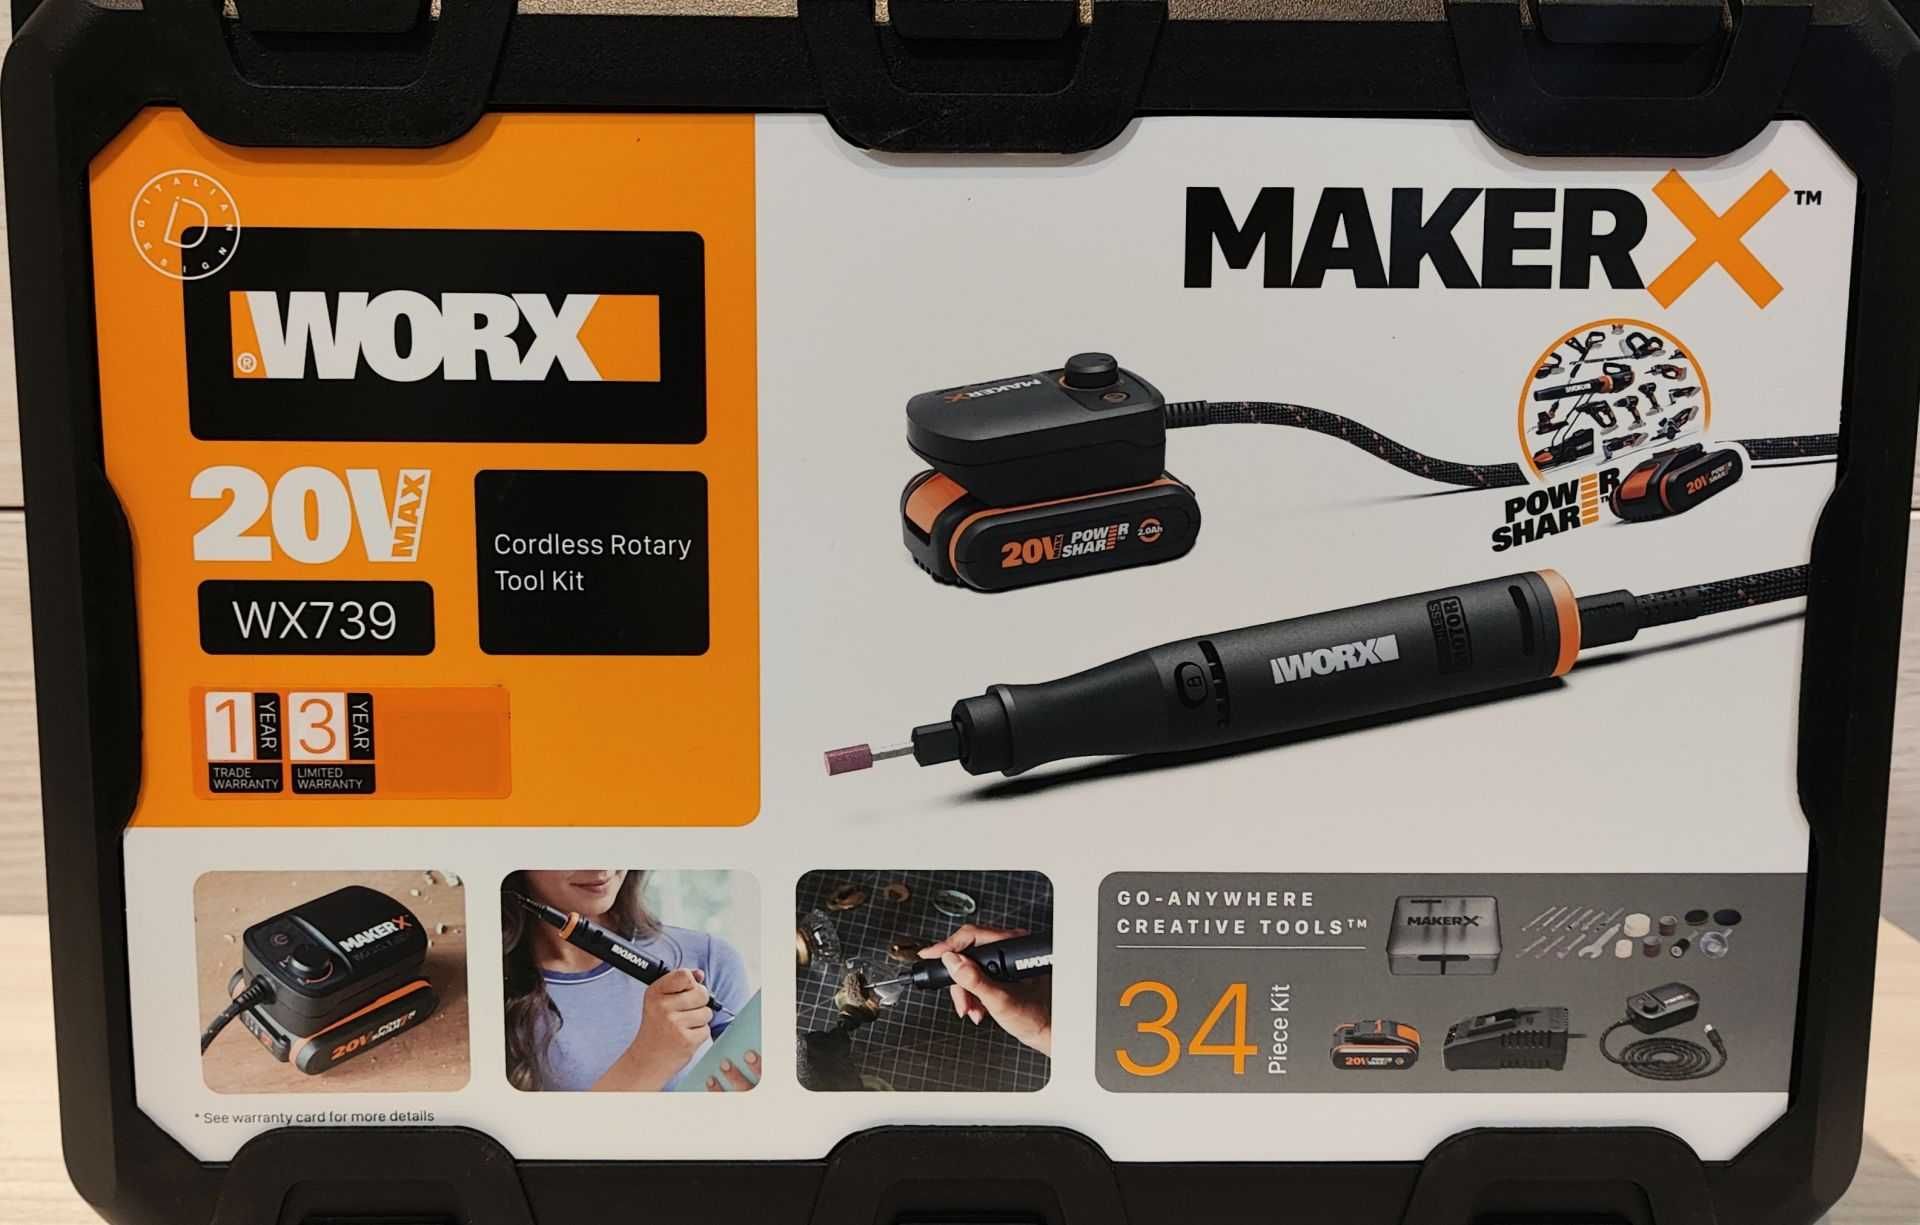 Multiszlifierka z akcesoriami MakerX WX739 WORX narzędzie obrotowe